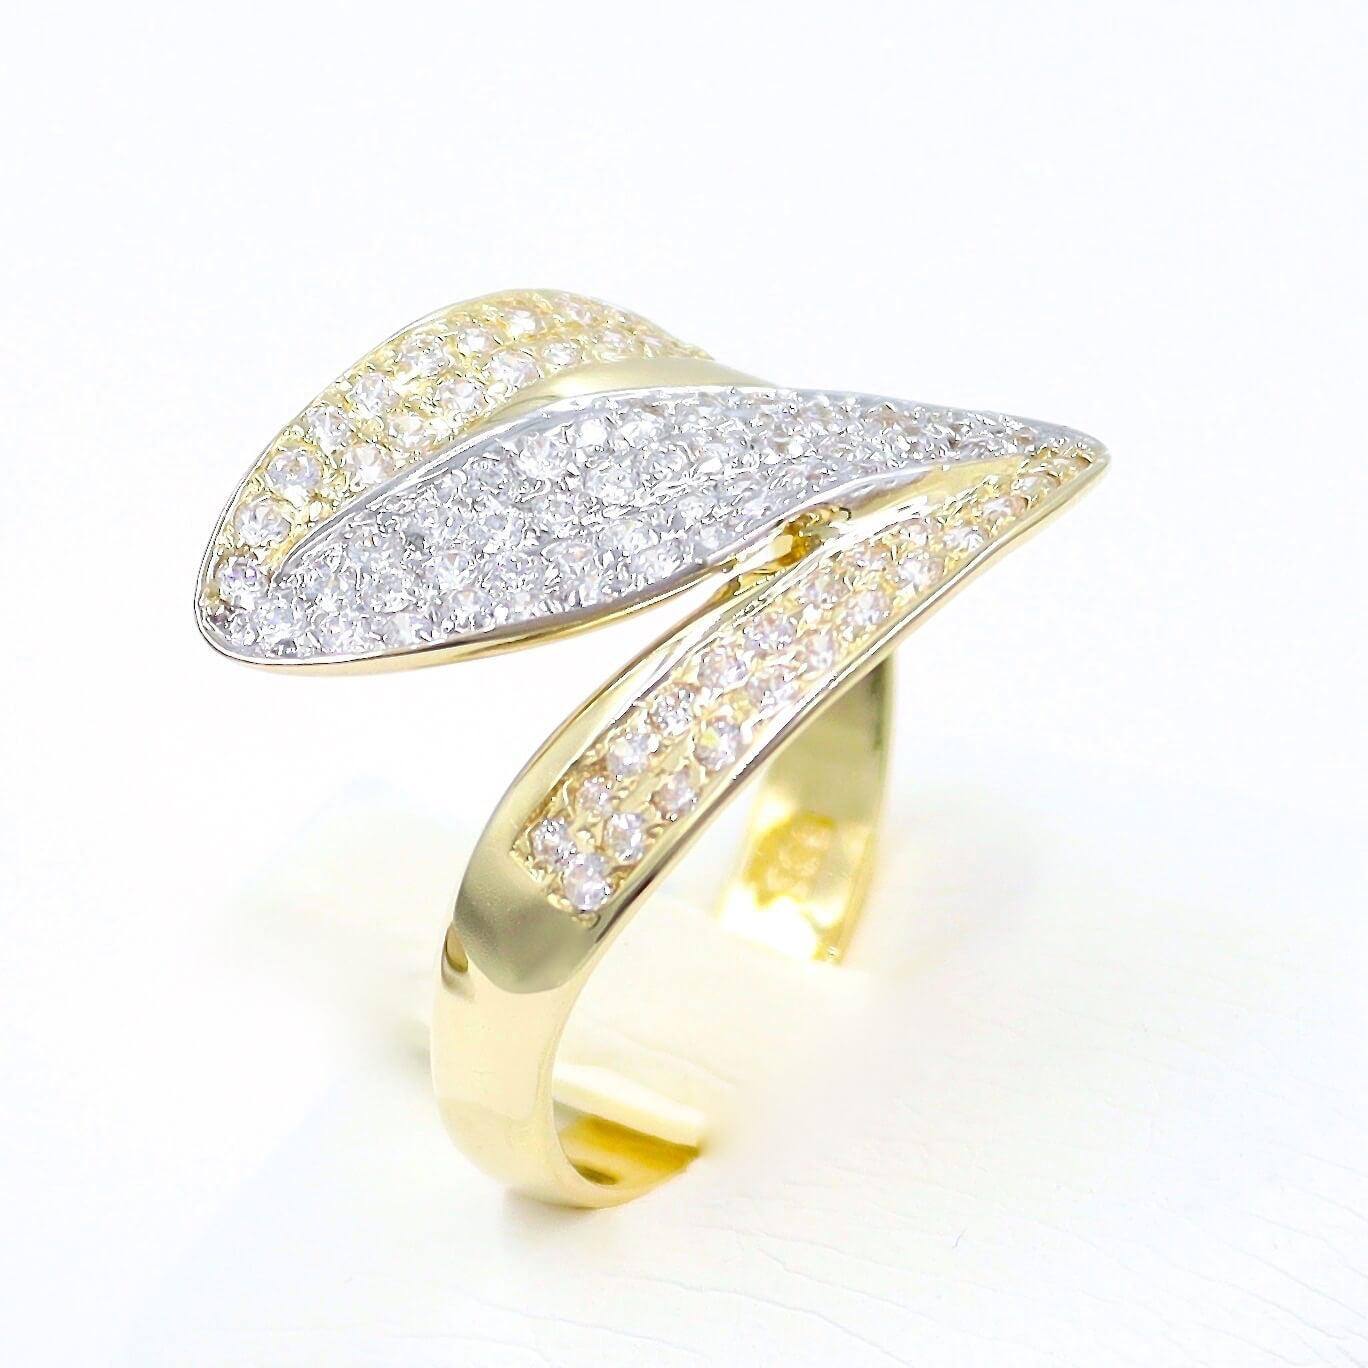 Δίχρωμο χρυσό δαχτυλίδι με λευκές πέτρες